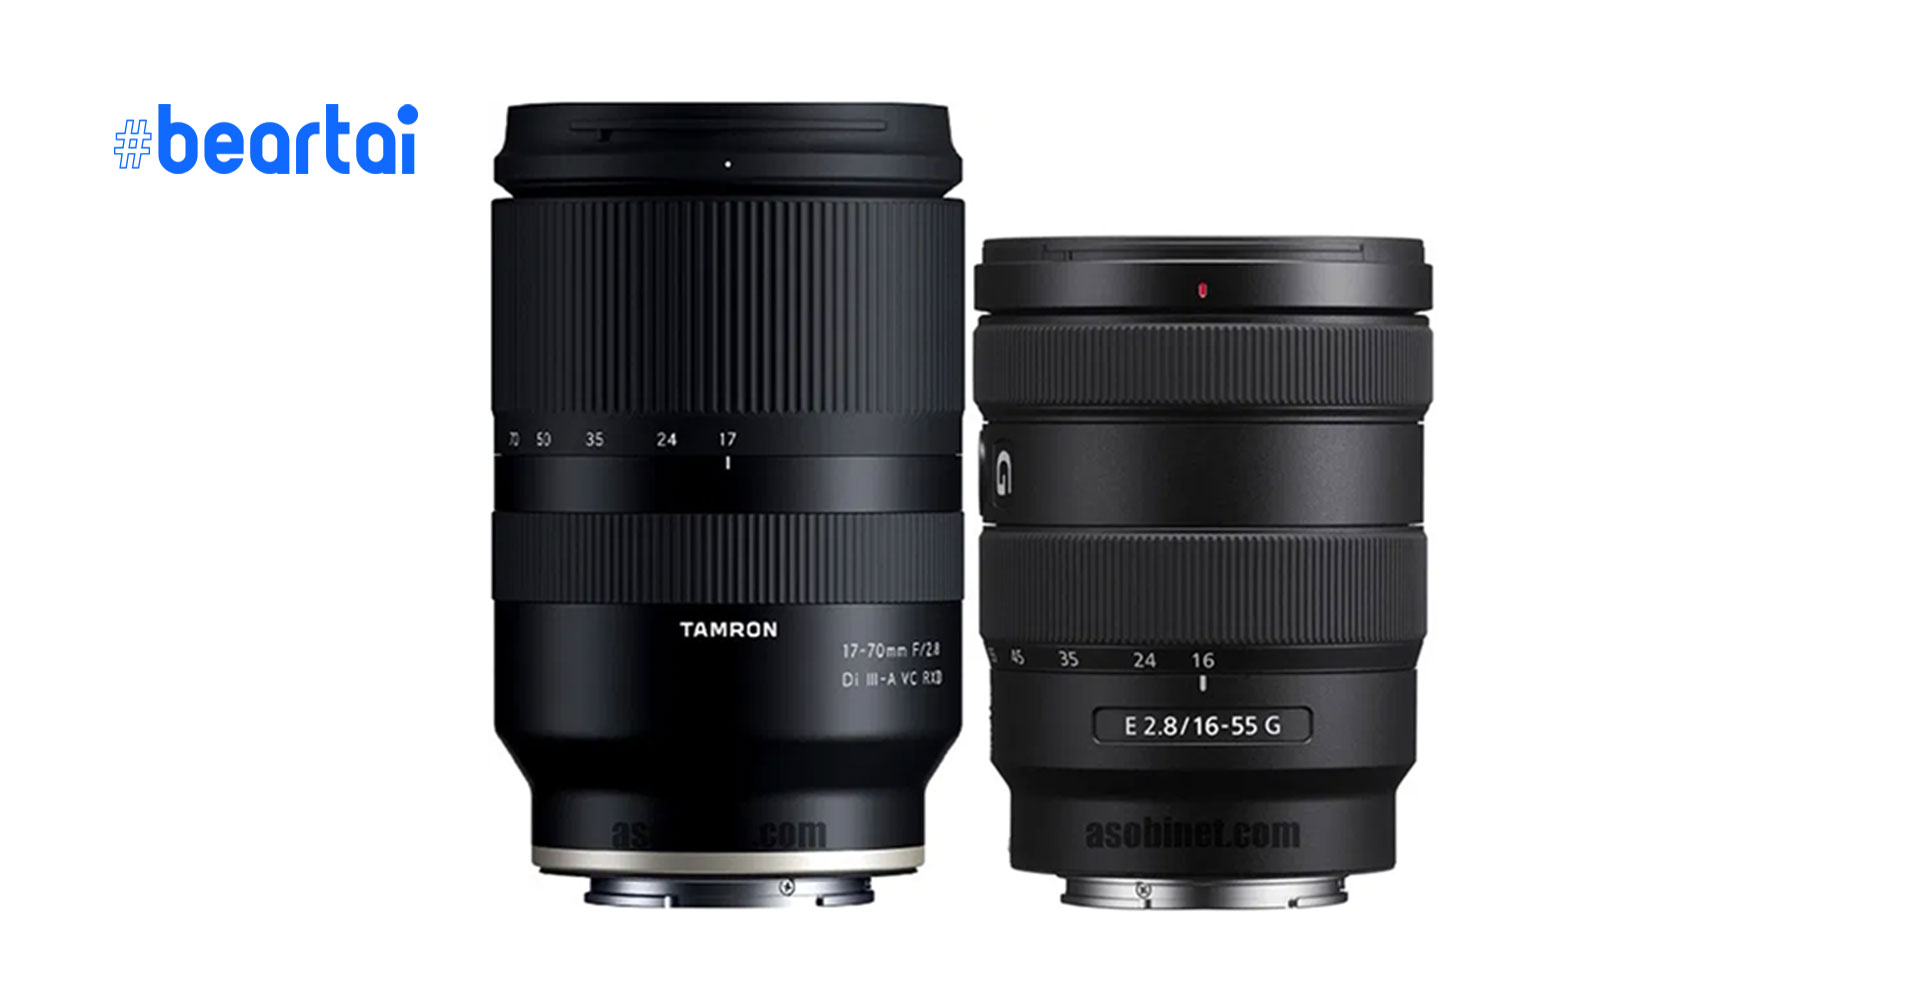 เทียบขนาดและสเปก Tamron 17-70mm f/2.8 Di III-A VC RXD ตัวใหม่ กับ Sony E 16-55 f/2.8 G